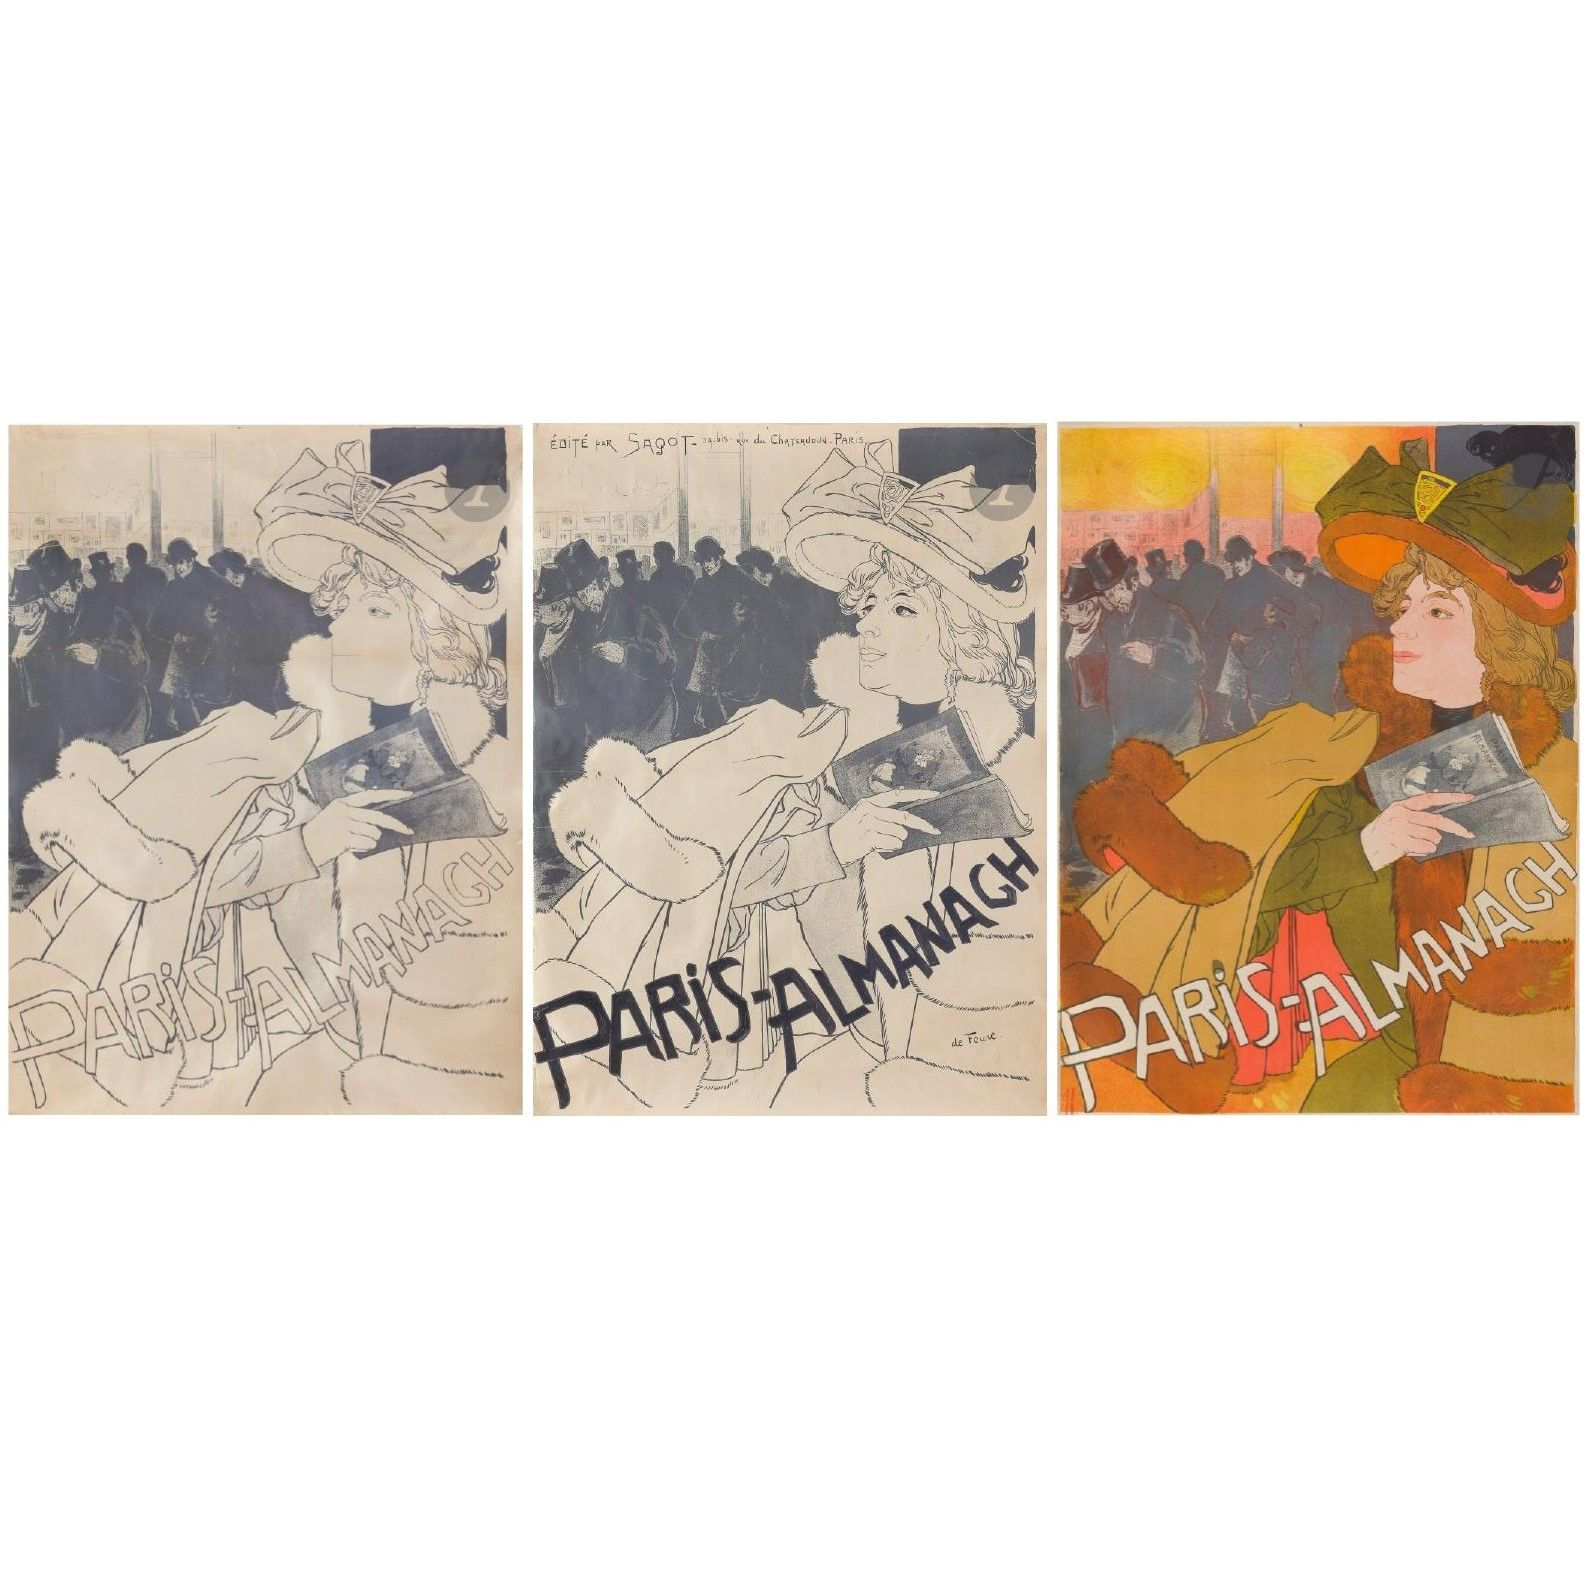 Null 
乔治-德福尔(1868-1943)



巴黎年鉴》，1894年



3幅布面彩色石版画，包括:



- 一张彩色样张，奇怪的是右下方没有签名。&hellip;